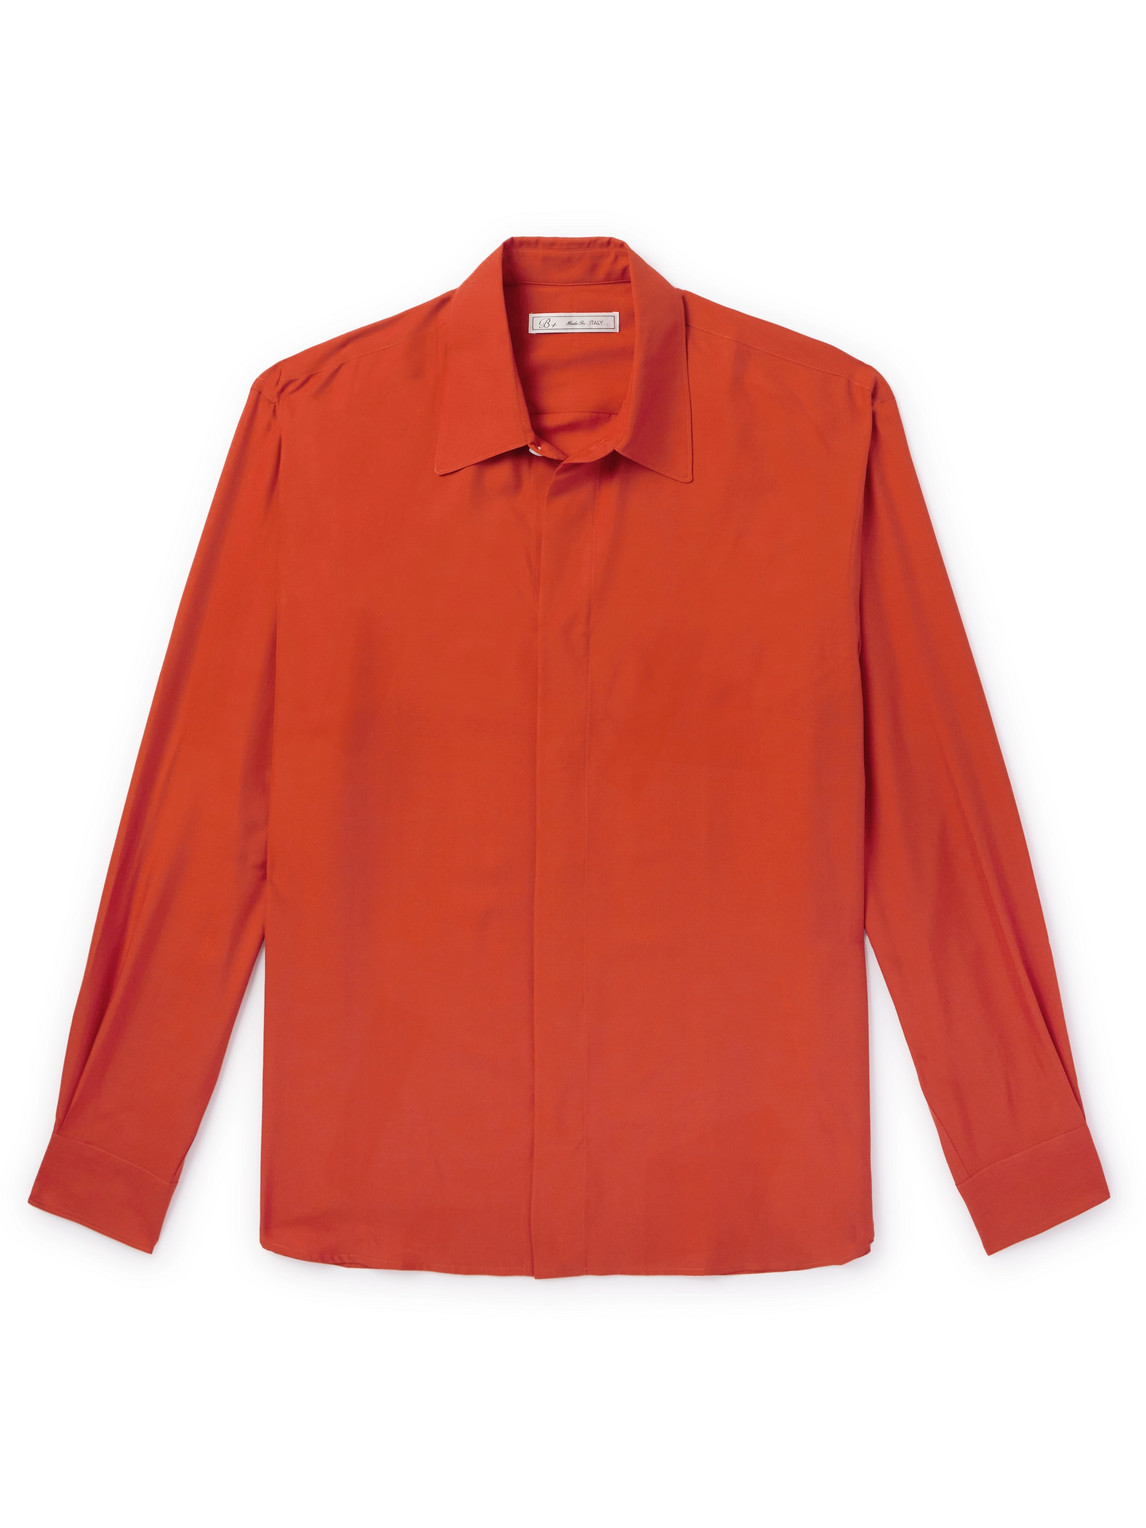 UMIT BENAN B - Silk Shirt - Men - Orange - IT 52 von UMIT BENAN B+